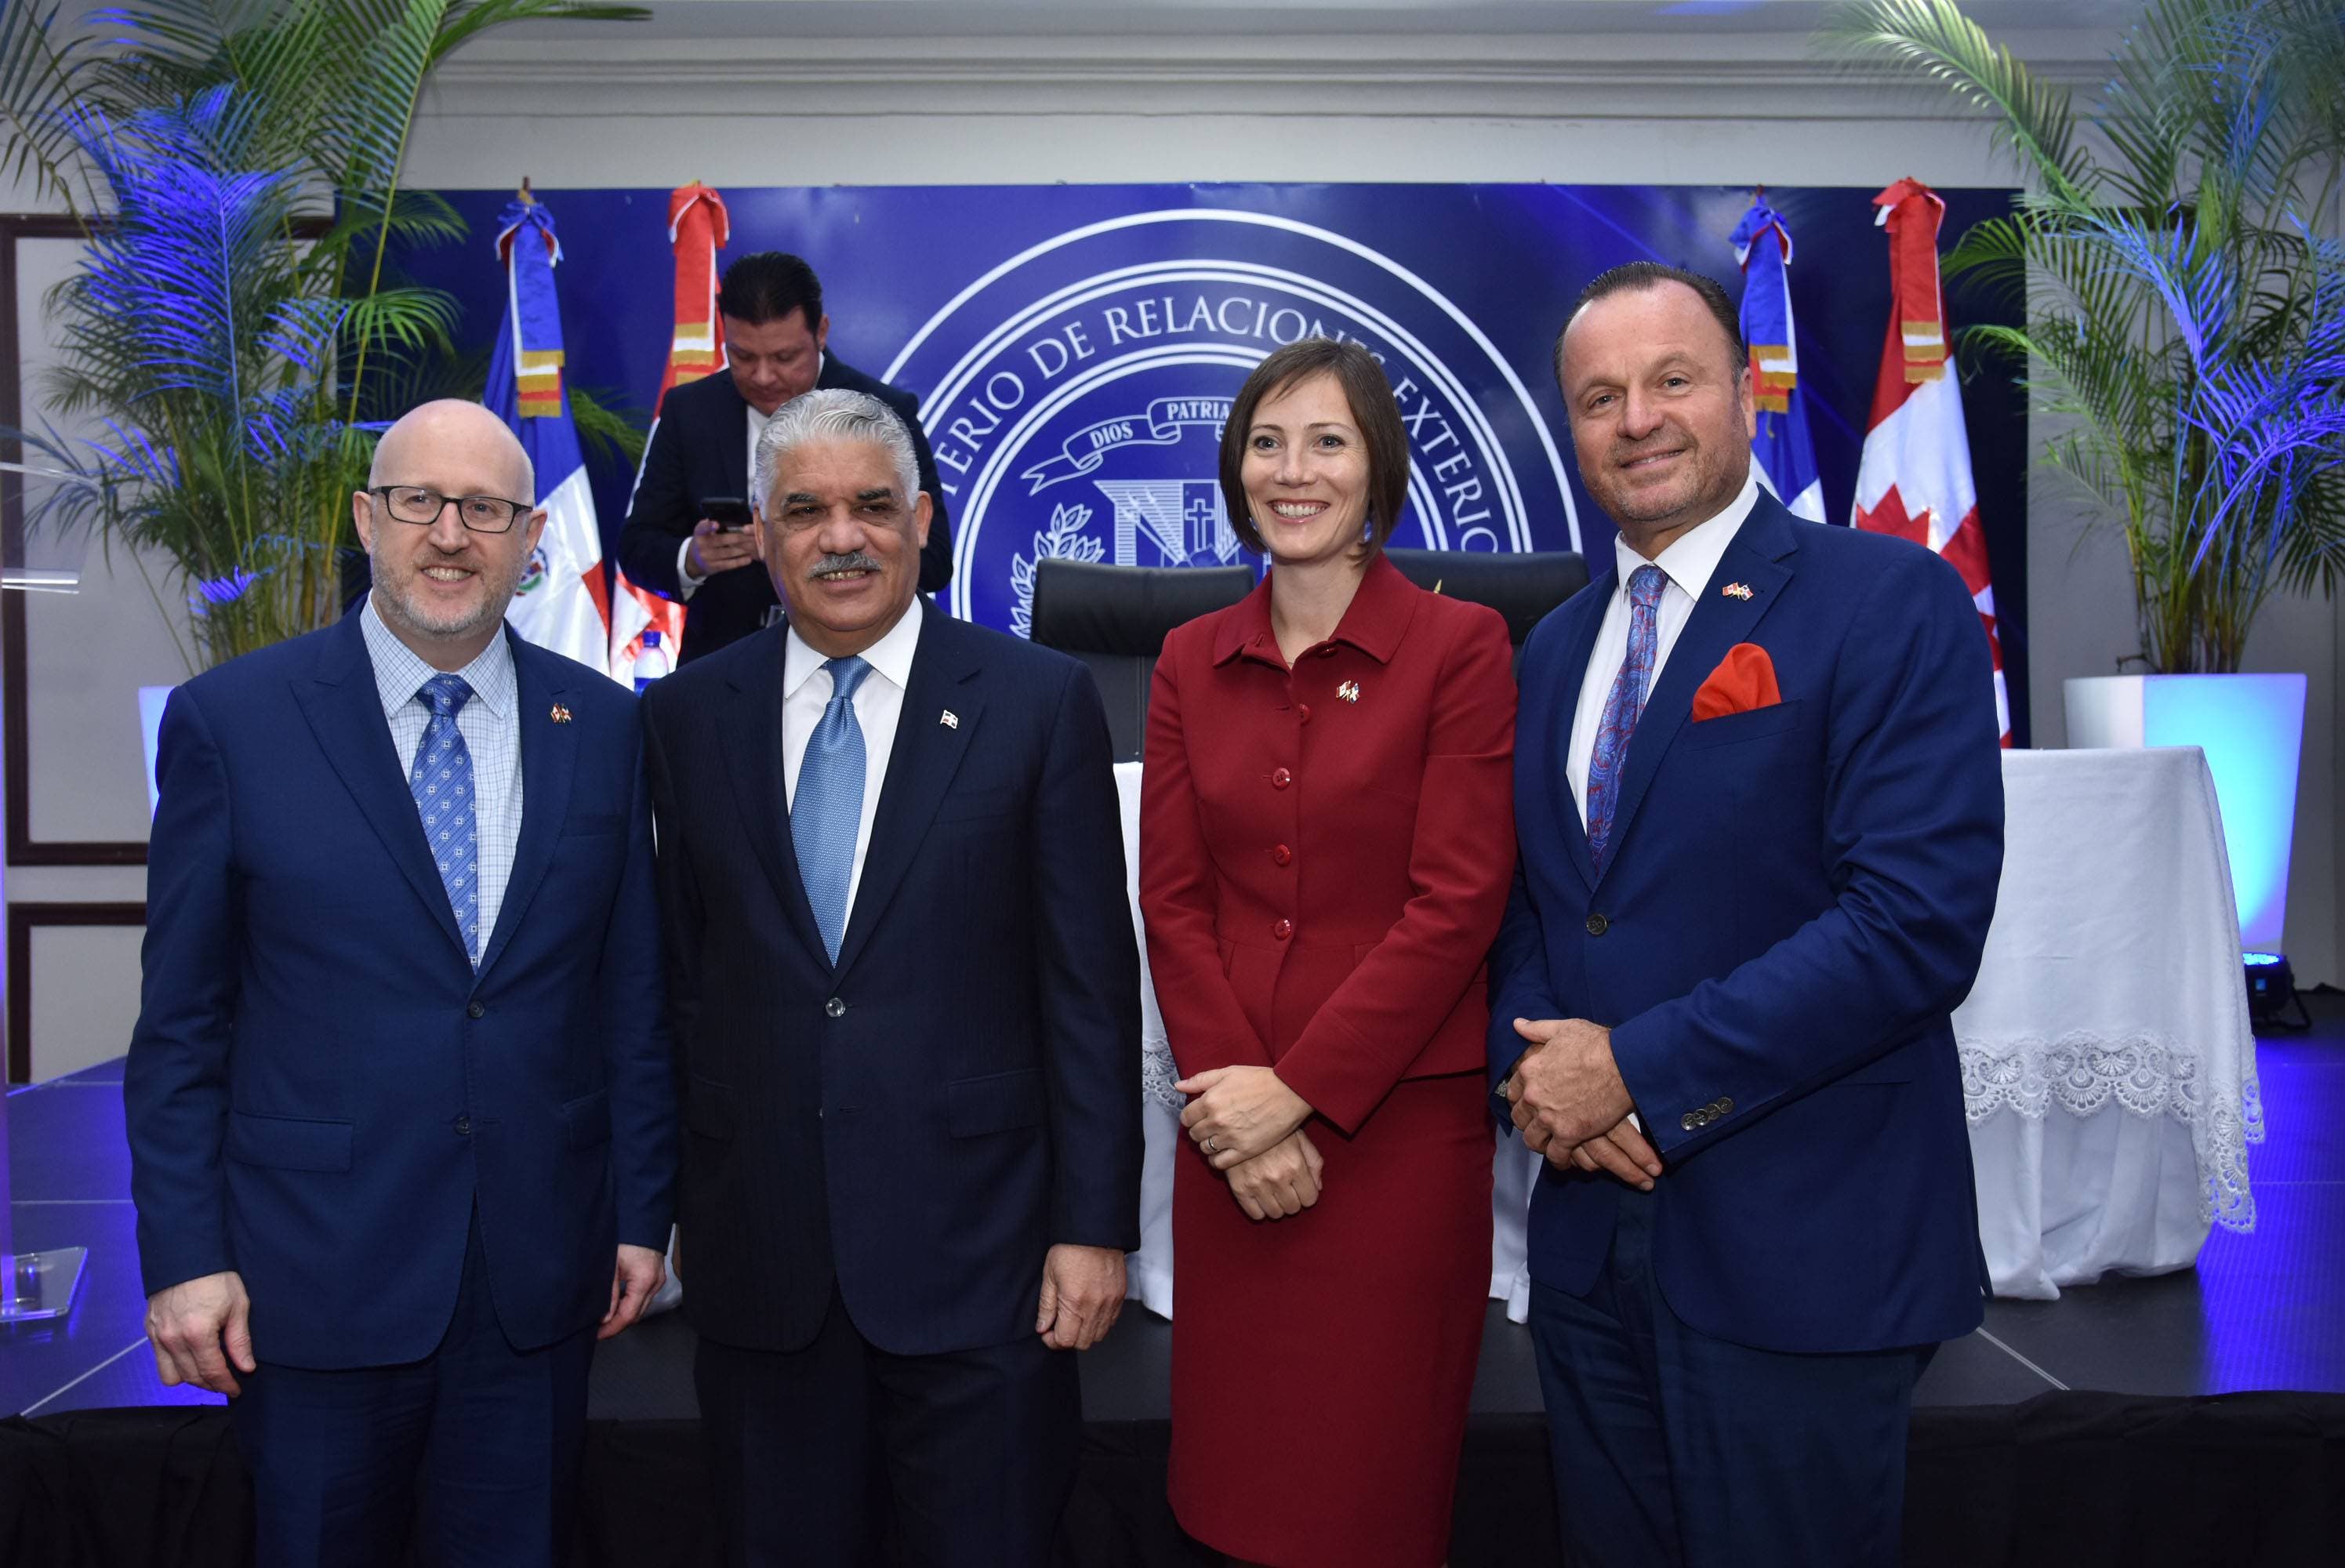 Un encuentro para celebrar acuerdo fortalecerá relaciones con Canadá